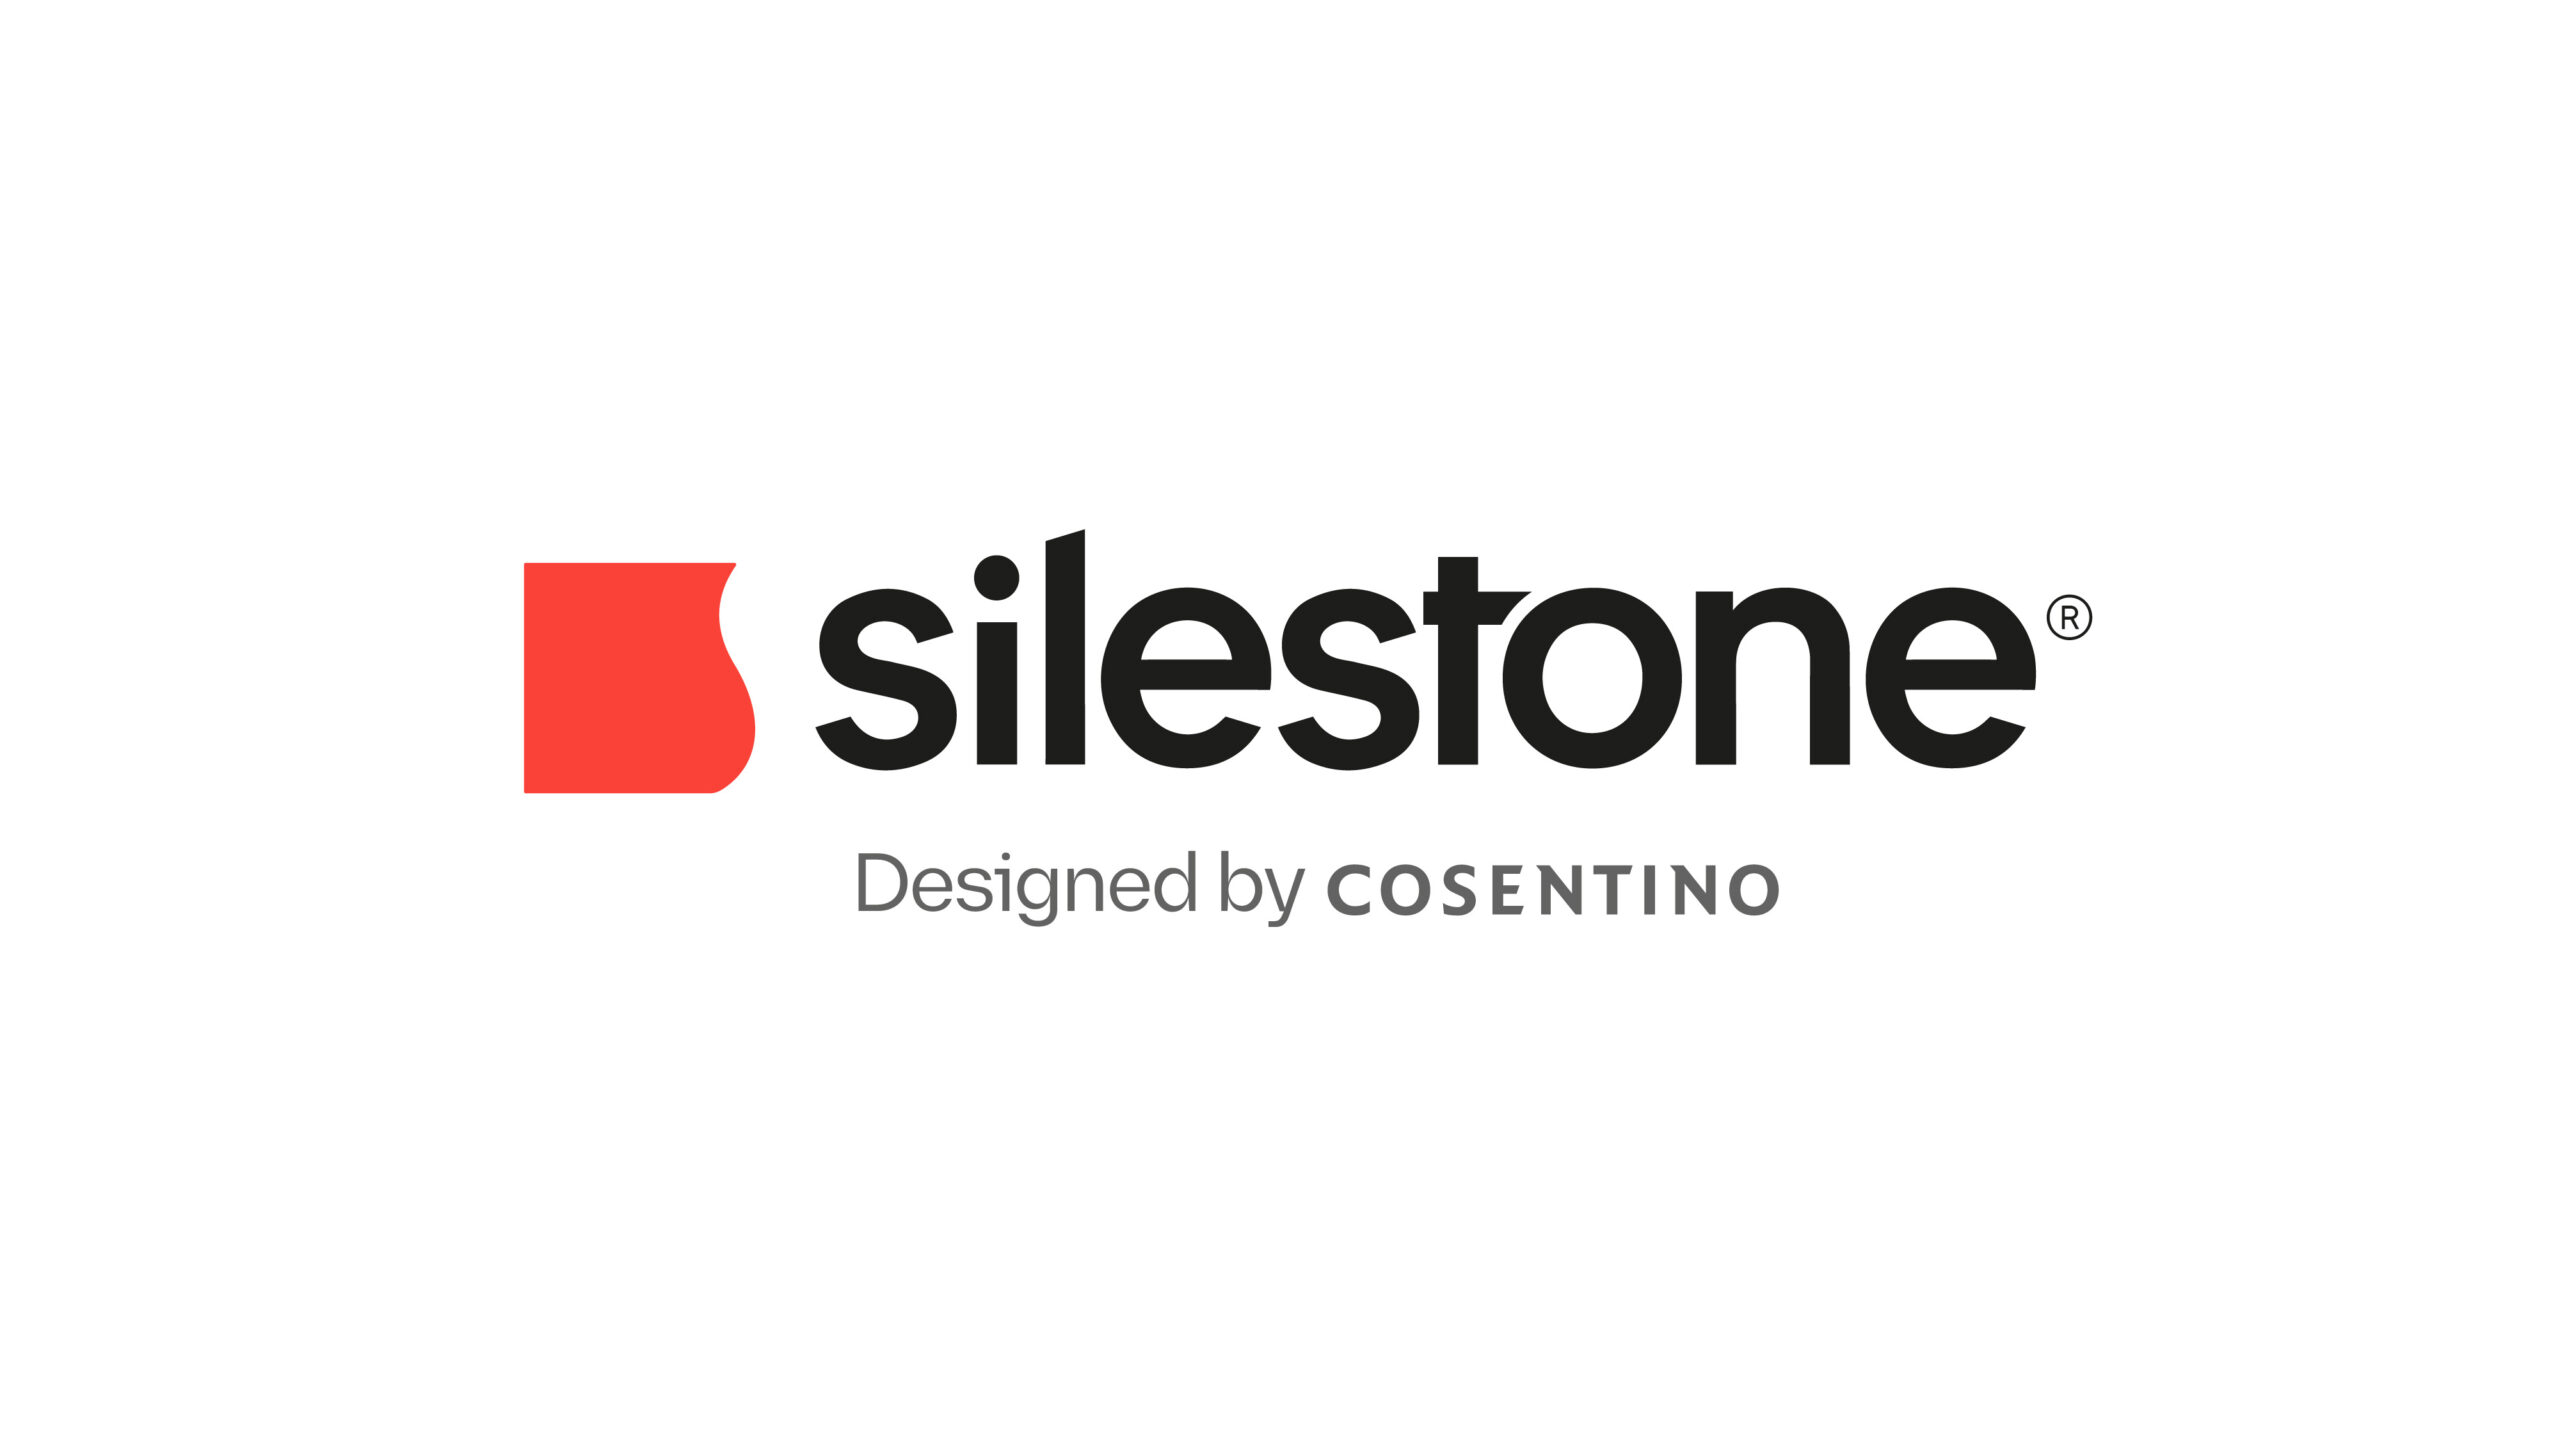 Numéro d'image 33 de la section actuelle de Cosentino présente la nouvelle image de Silestone® de Cosentino France